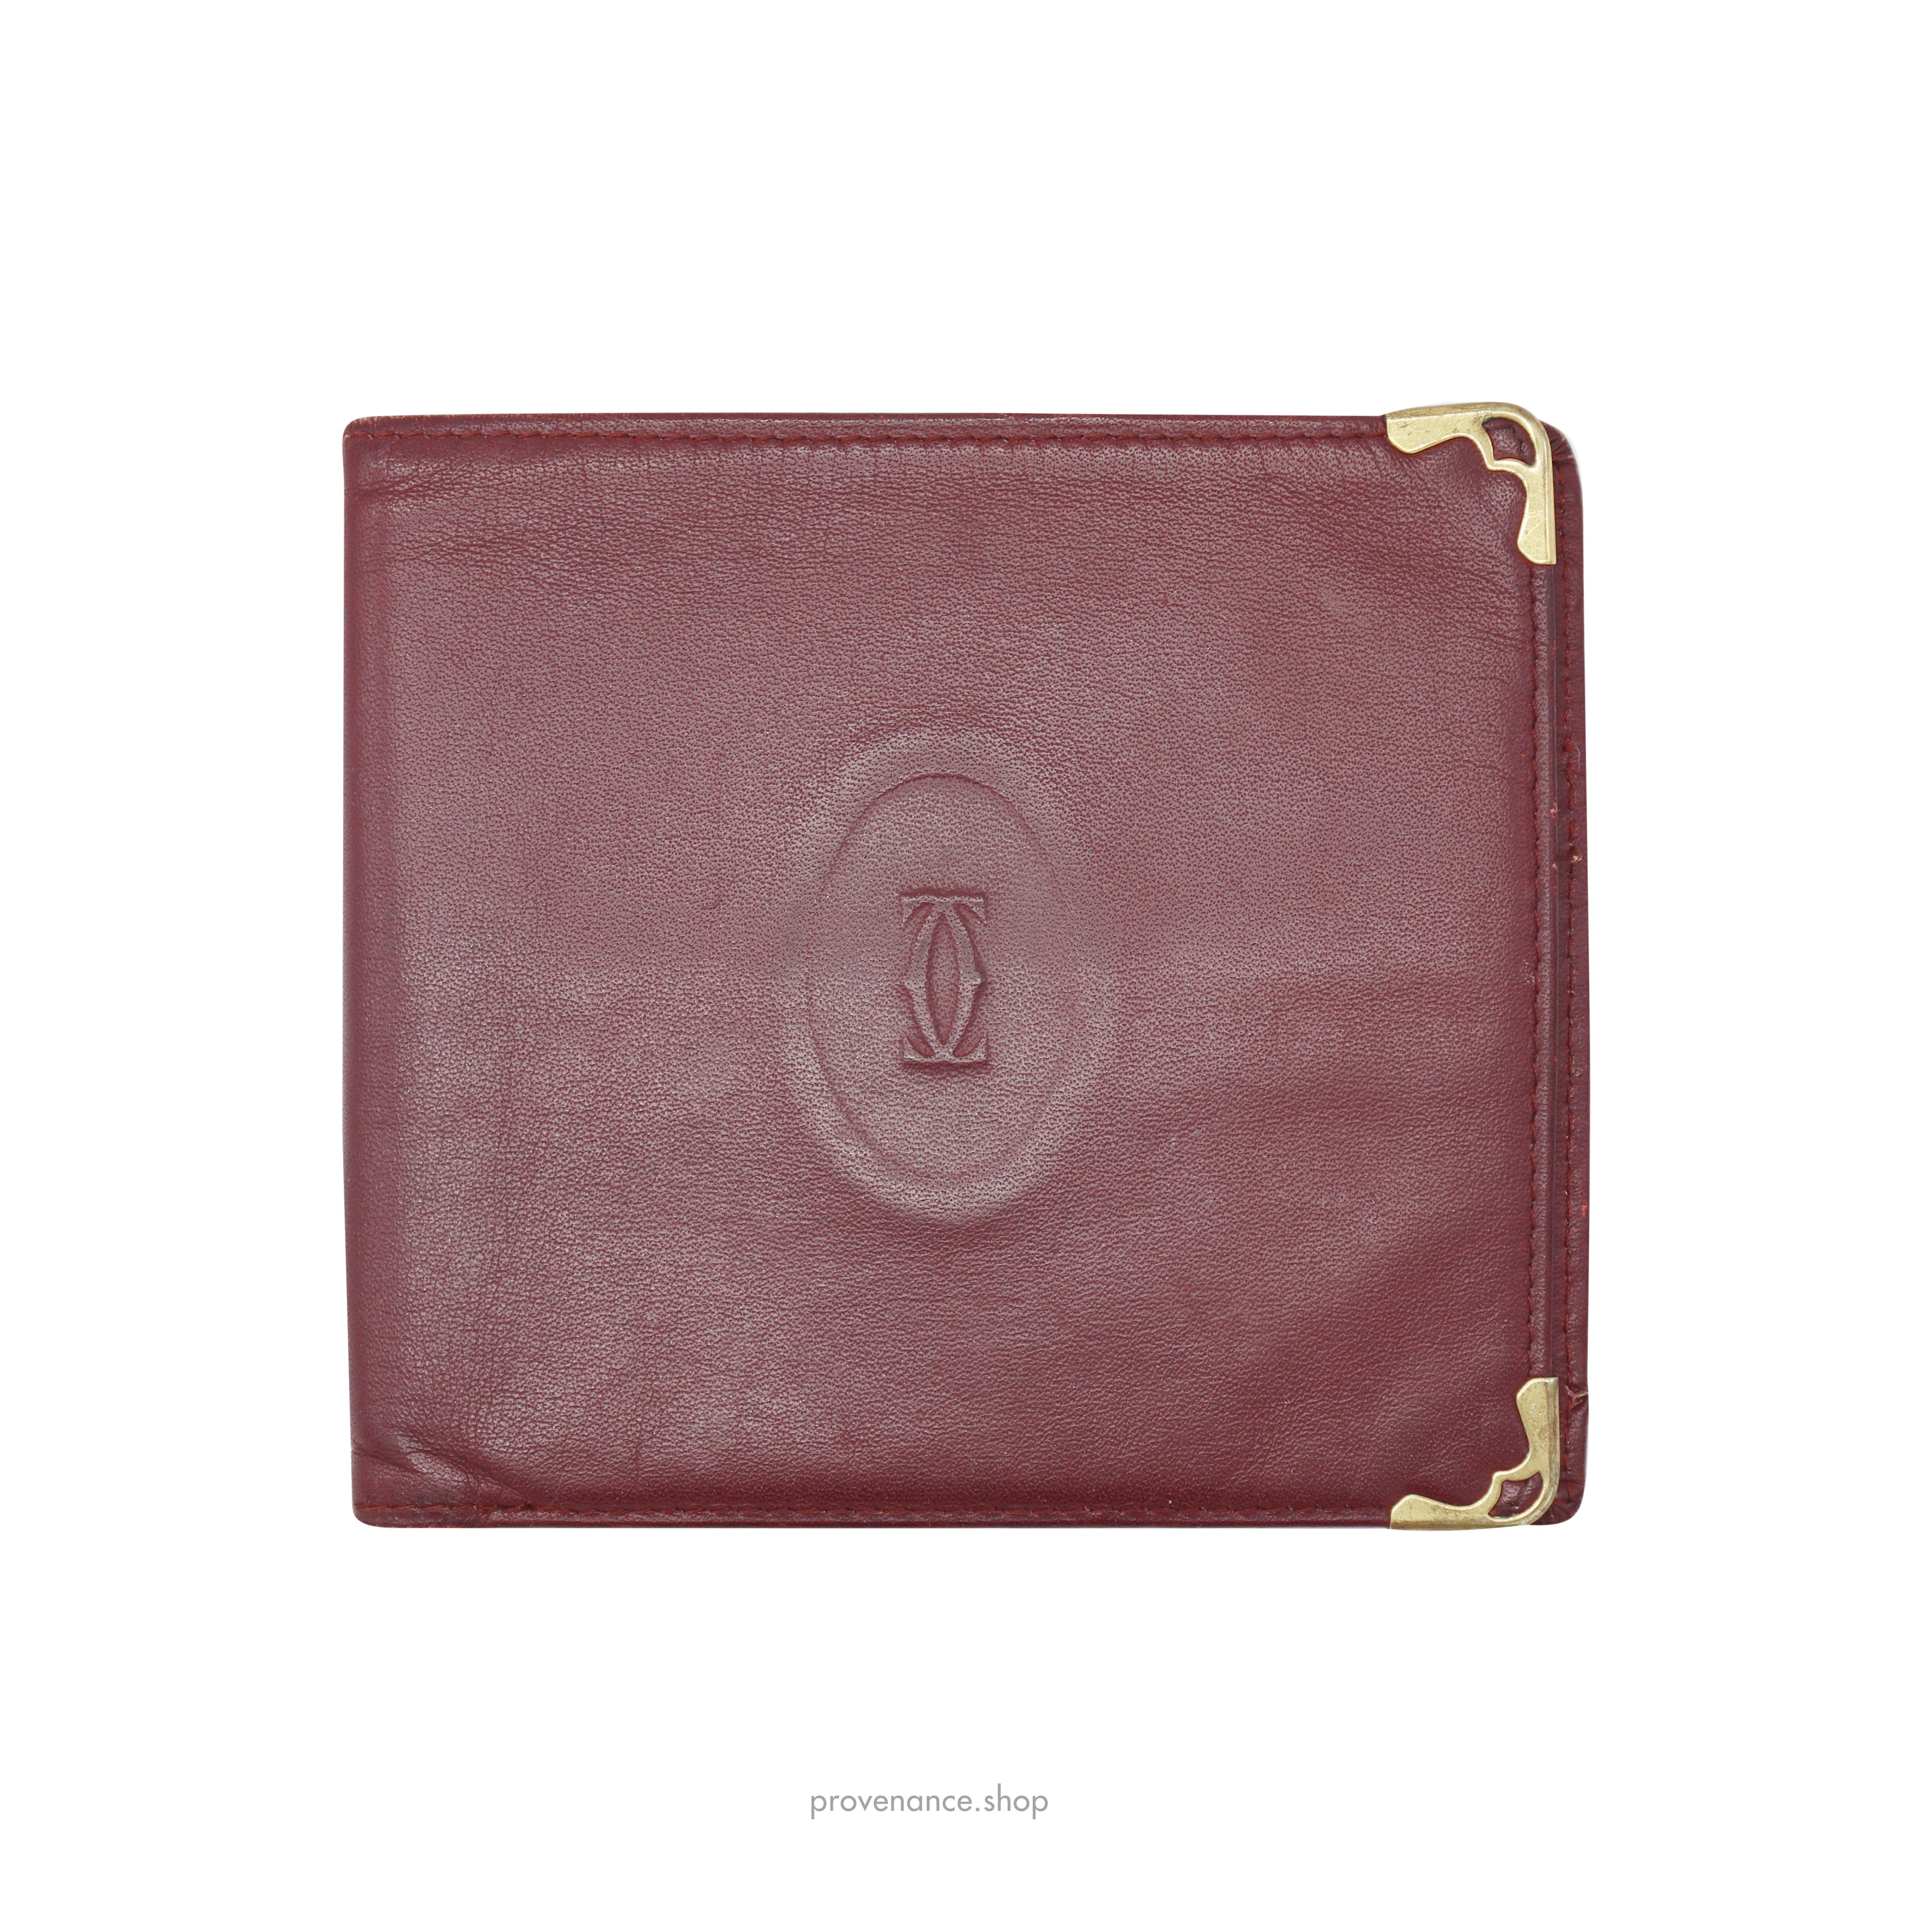 Cartier Bifold Wallet - Burgundy Calfskin Leather - 1